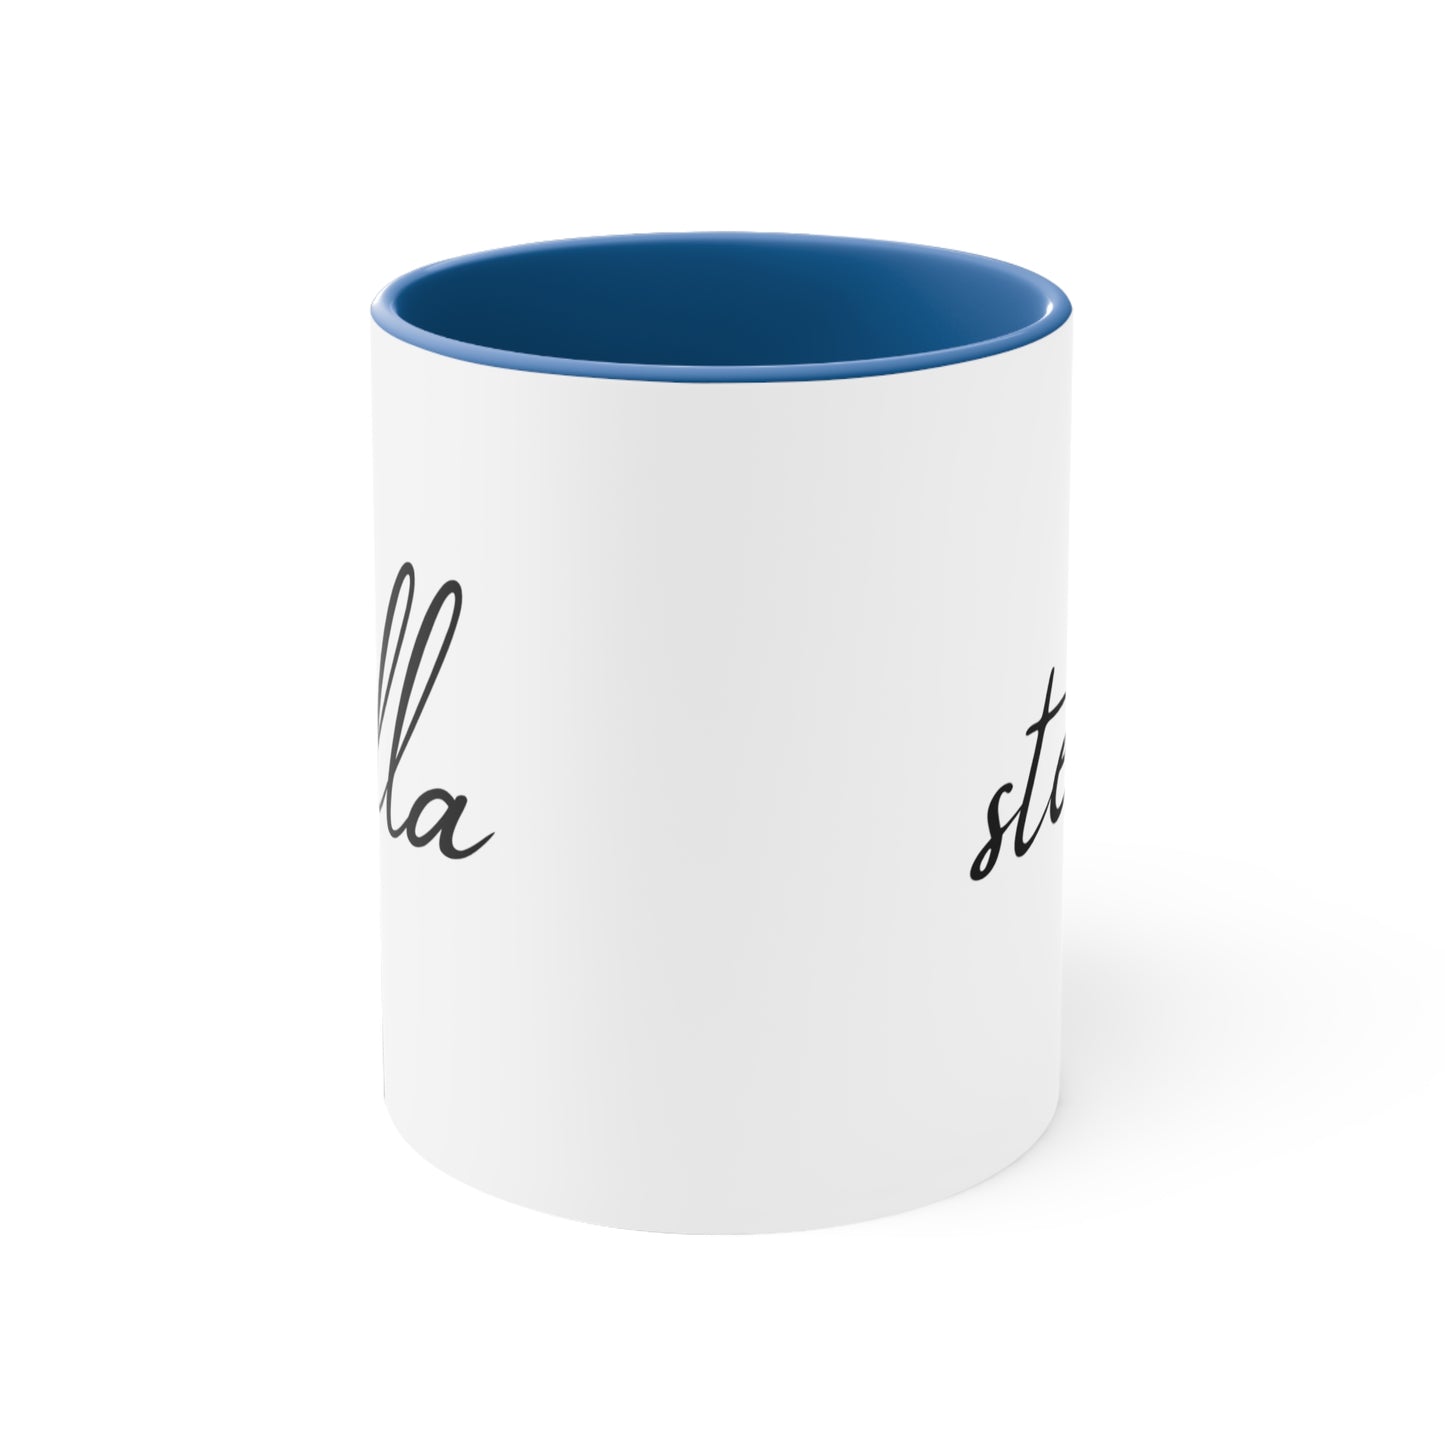 Stella Printed Custom Name Accent Coffee Mug, 11oz, Gift for Her